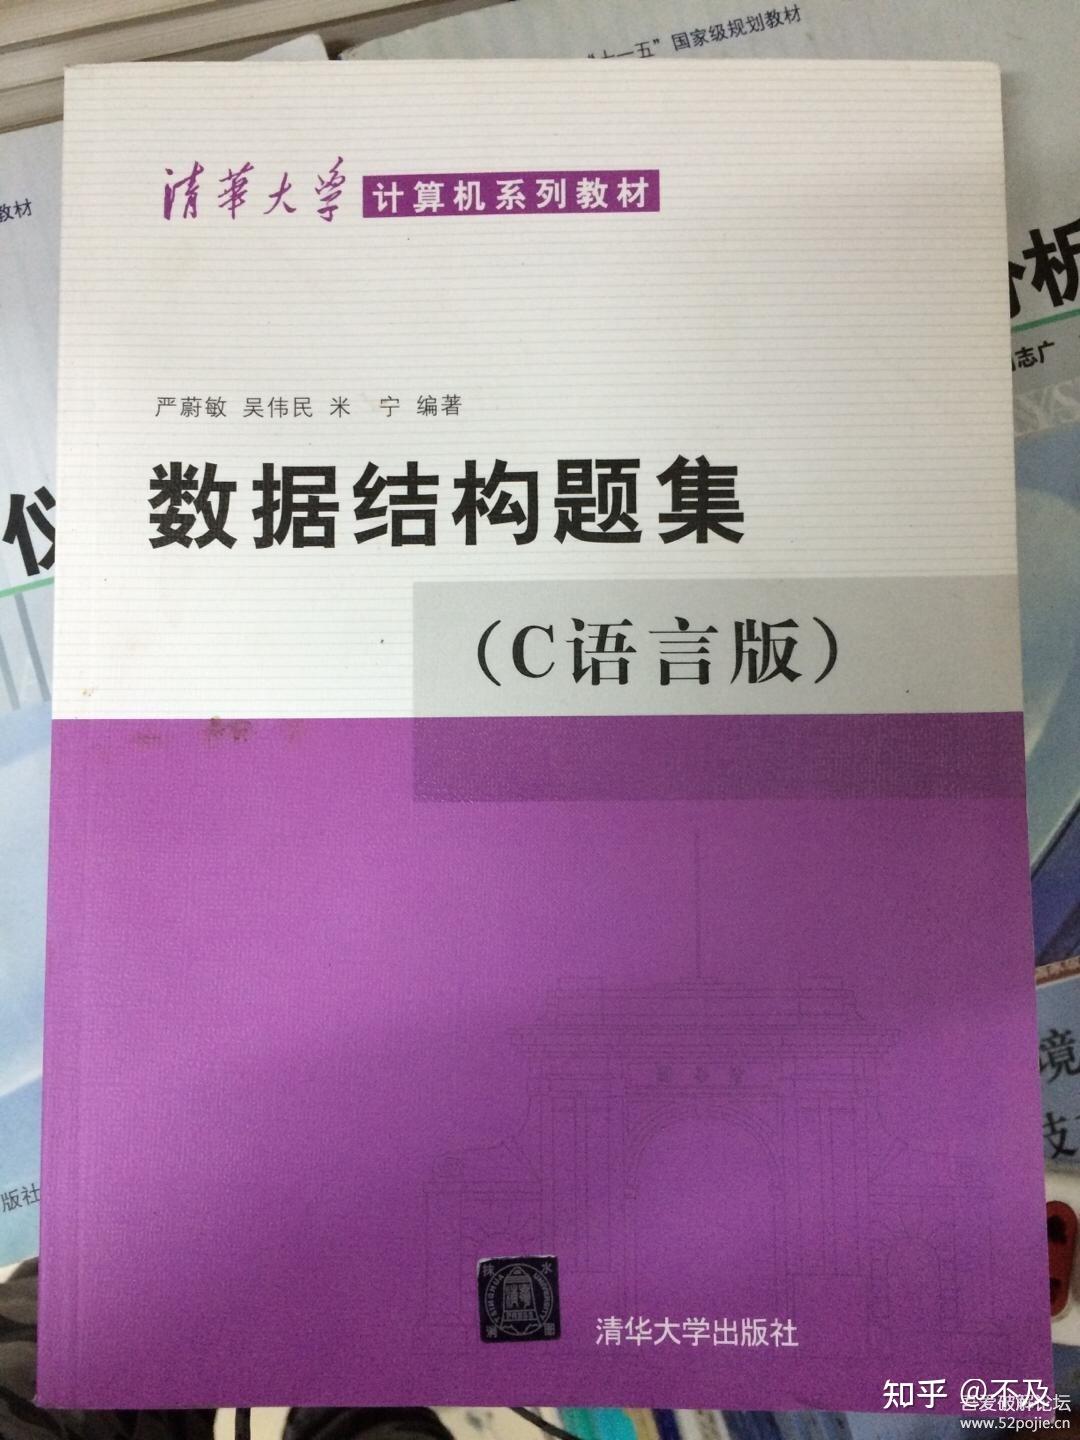 计算机考研名师张雪峰老师推荐的计算机院校主要是什么？